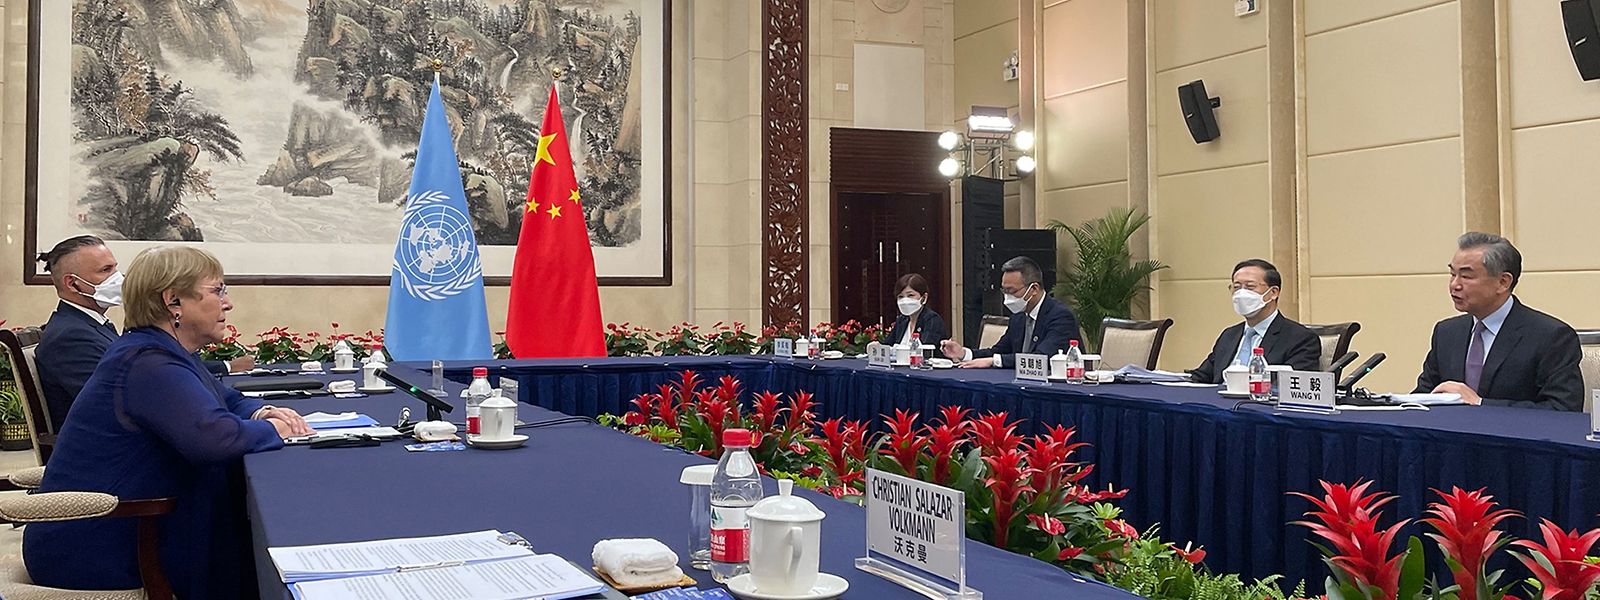 Die UN-Menschenrechtsbeauftragte Michelle Bachelet (links) im Gespräch mit Chinas Außenminister Wang Yi (rechts) während ihres Treffens in der südchinesischen Stadt Guangzhou.